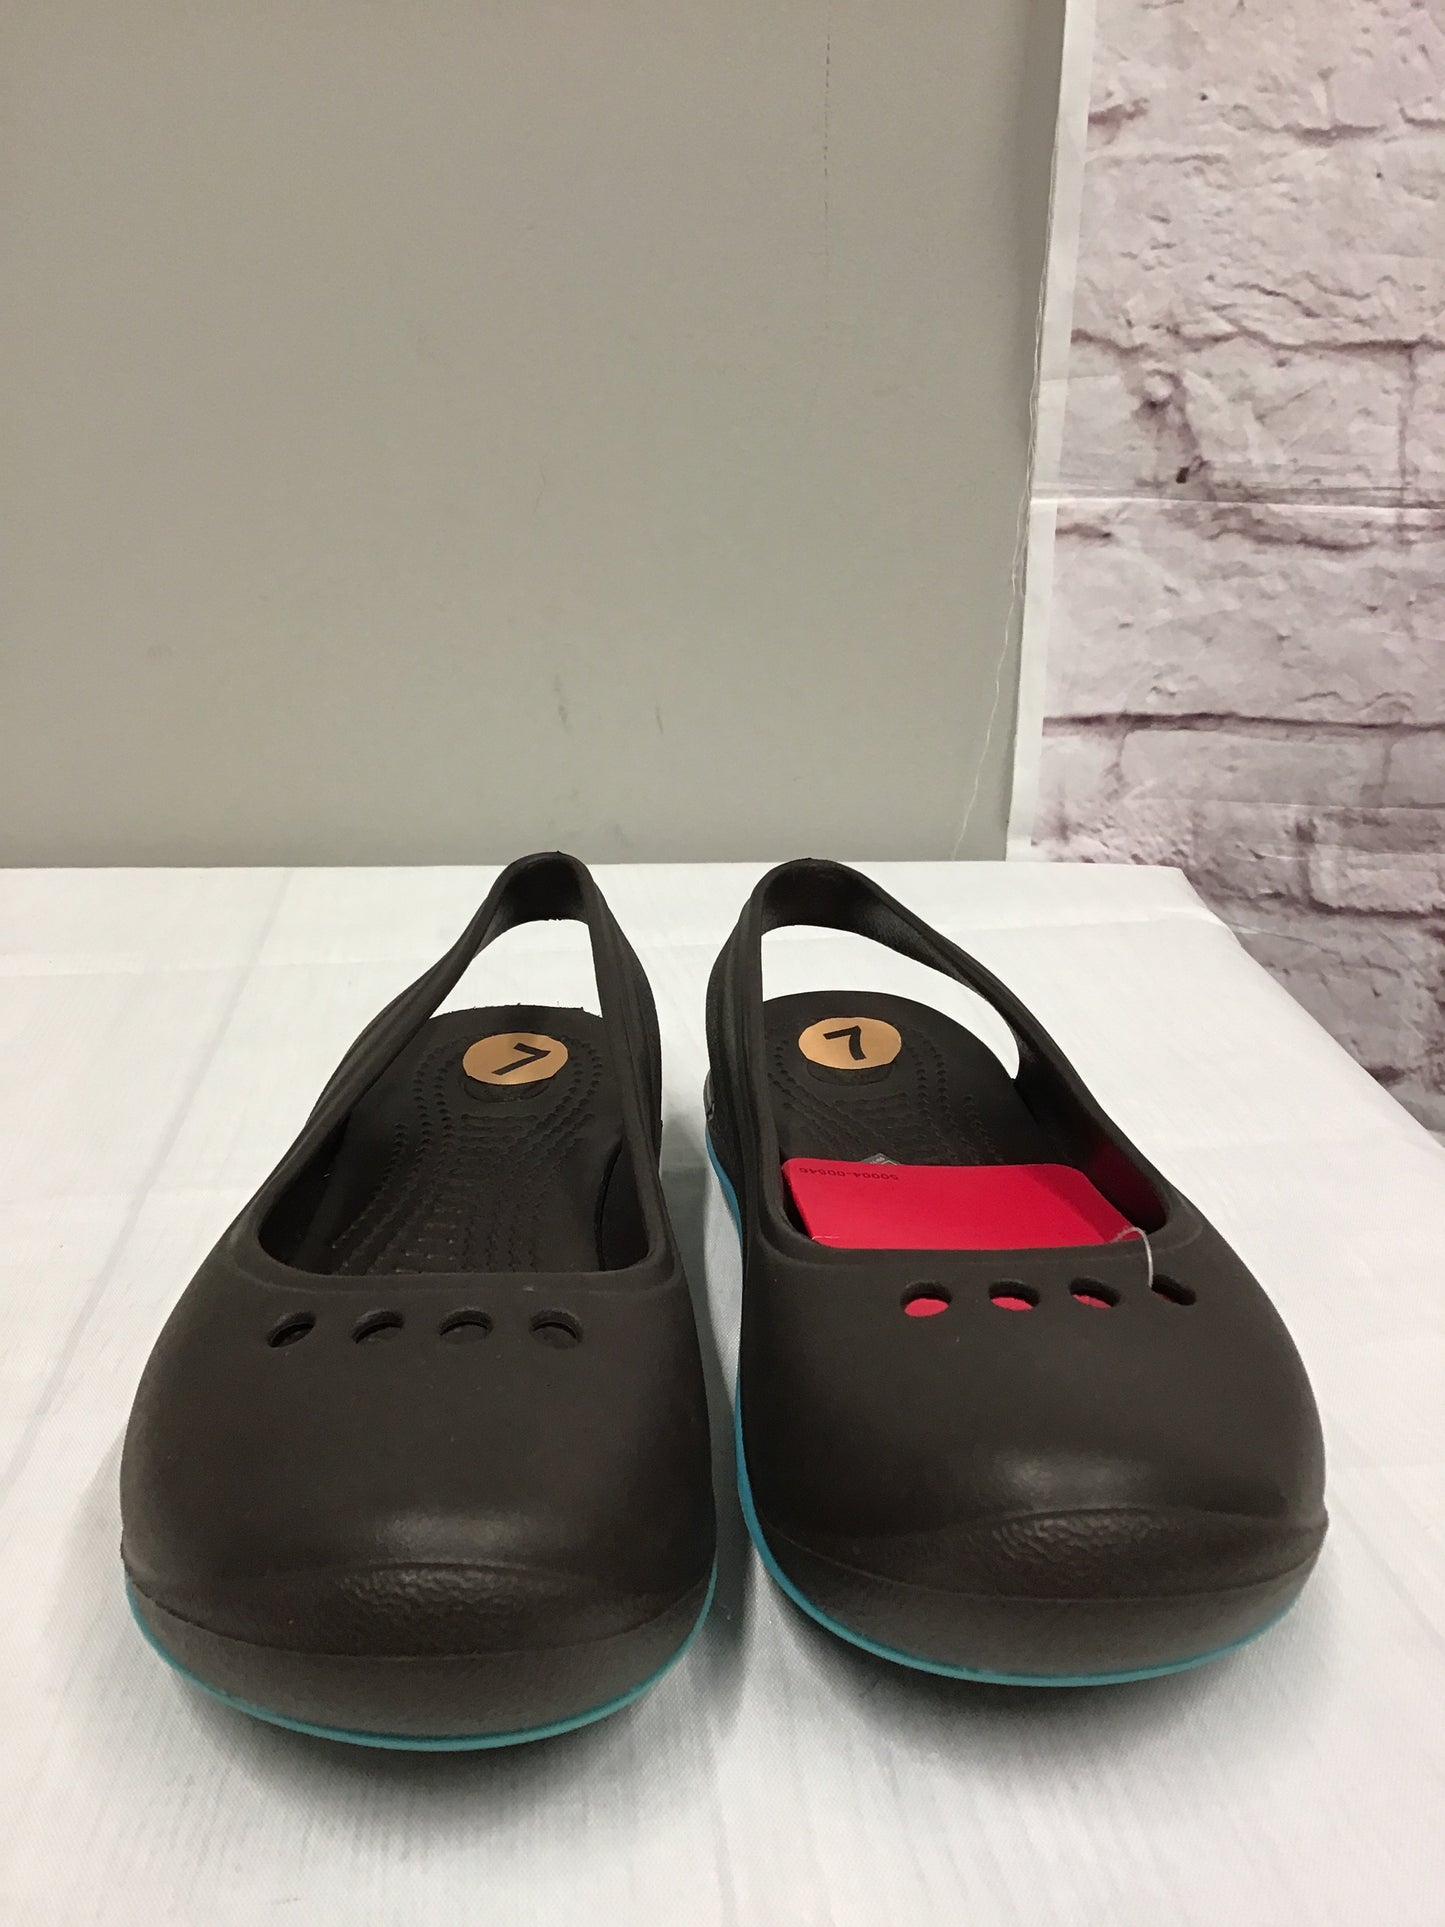 Shoes Flats Mule & Slide By Crocs  Size: 7